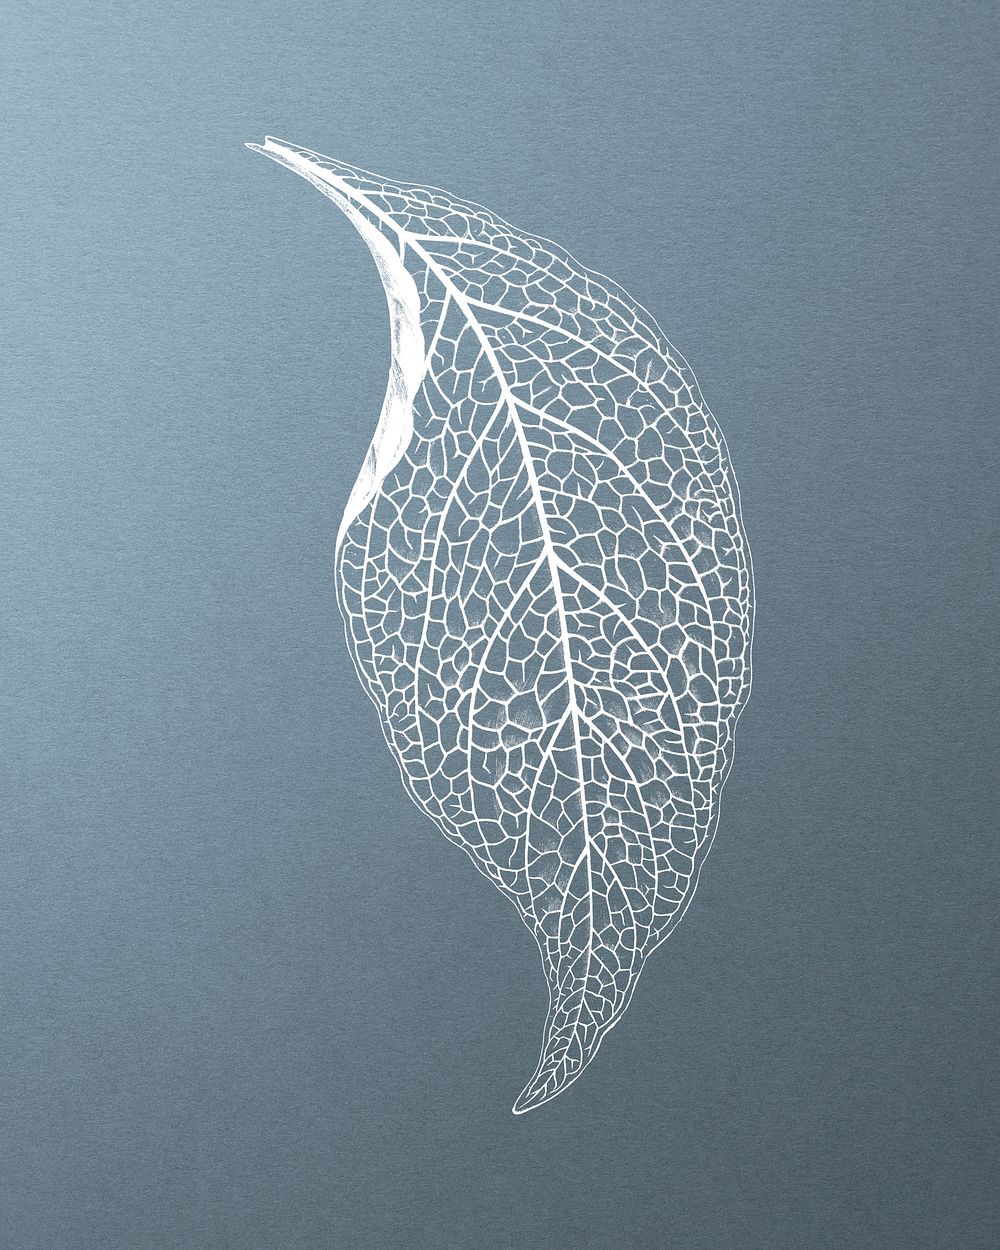 Adelaster Albivenis, engraved leaf vintage illustration, remix from original artwork of Benjamin Fawectt